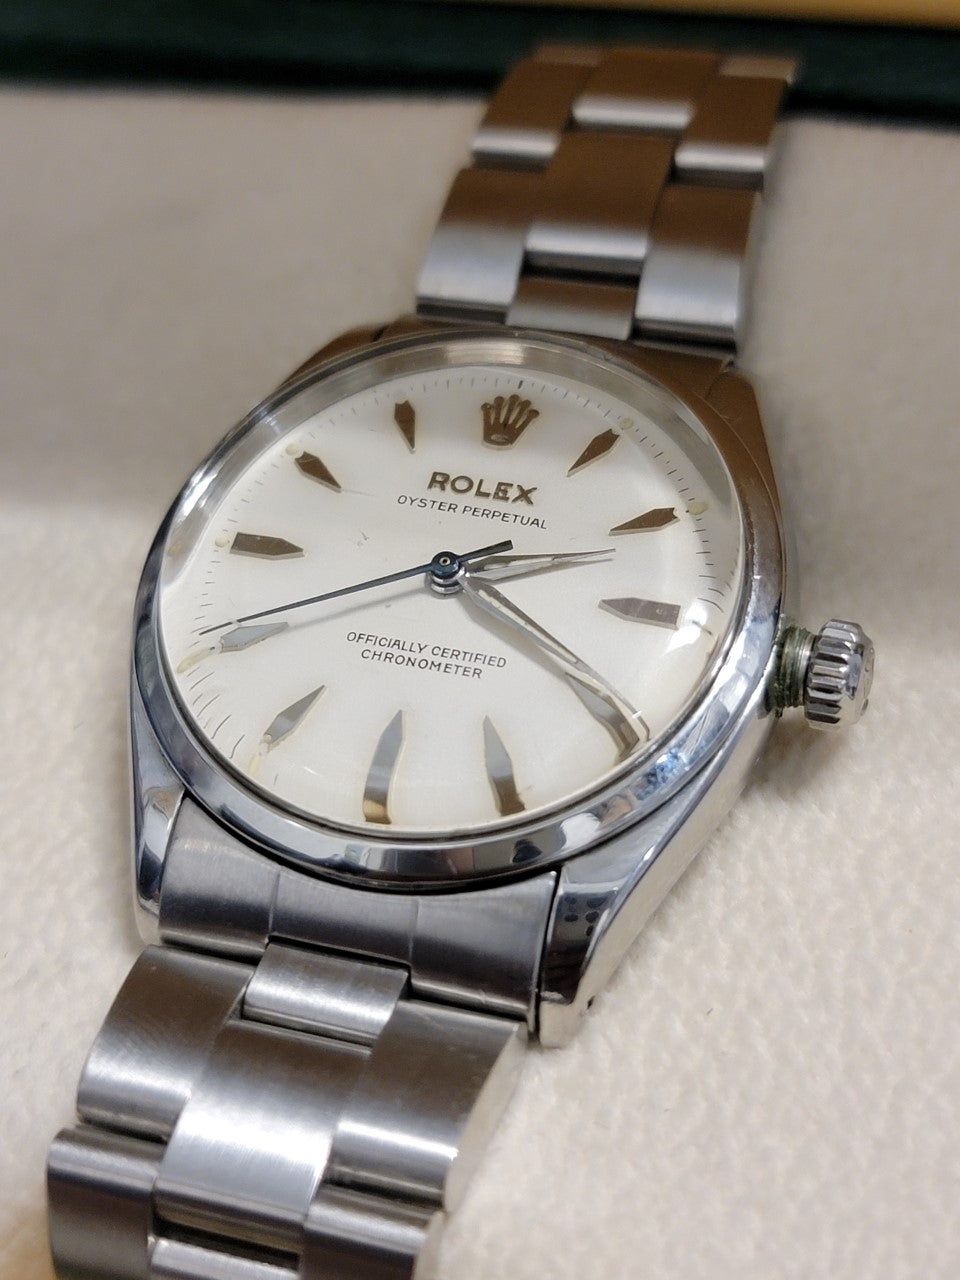 ROLEX c. 1967 Perpetual Watch